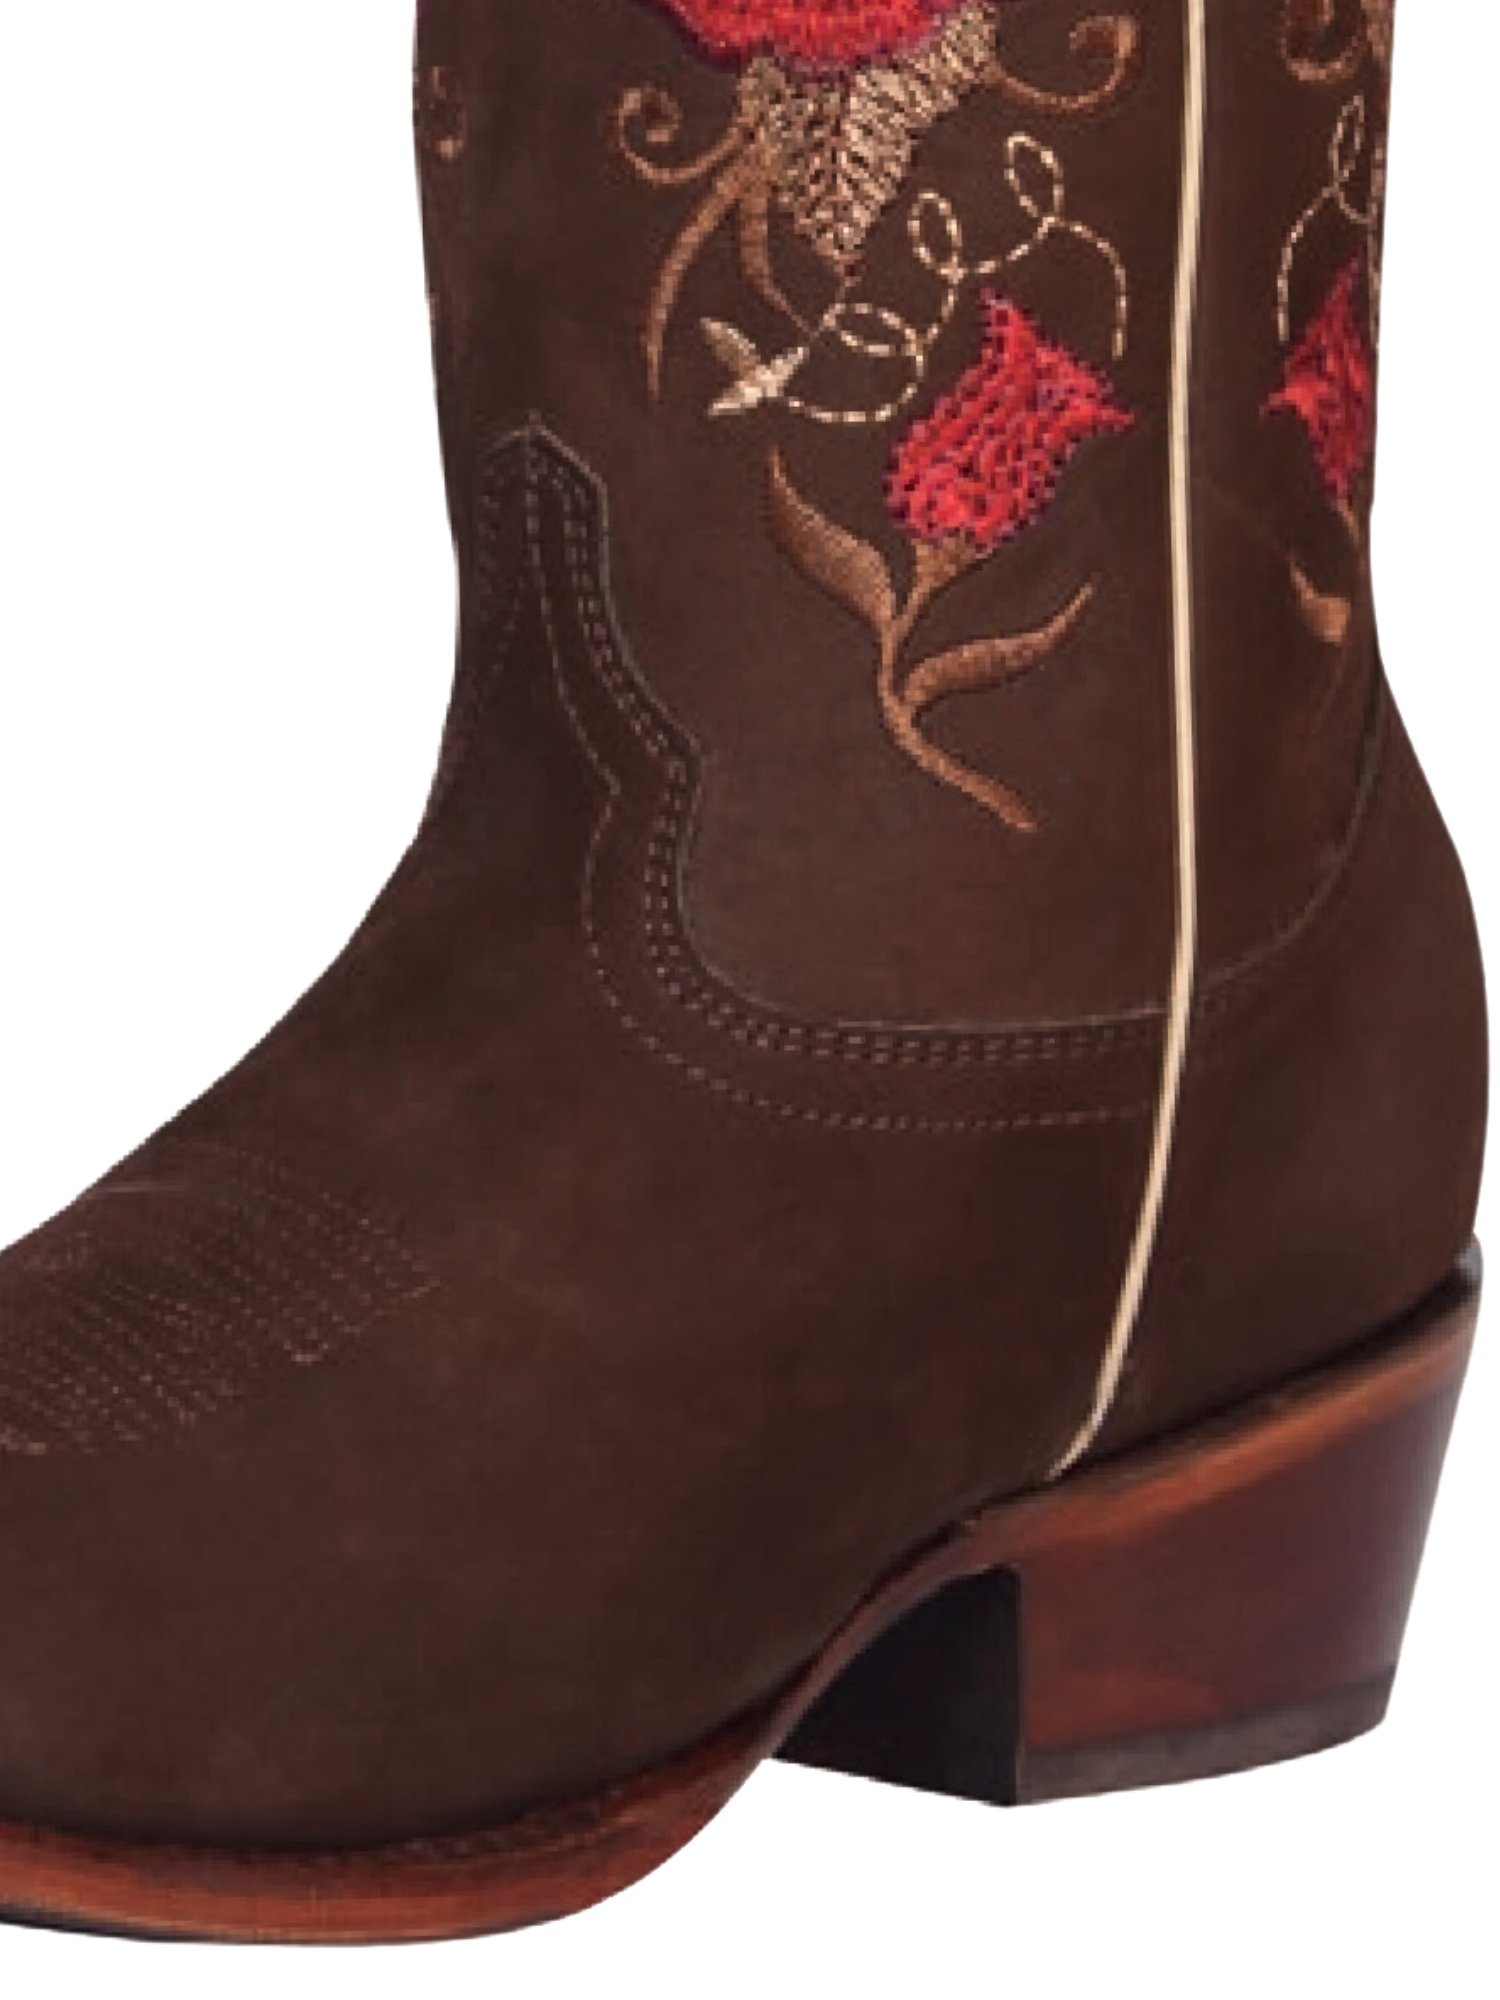 Botas Vaqueras Rodeo con Tubo Bordado de Flores de Piel Nobuck para Mujer 'El General' - ID: 42025 Cowgirl Boots El General 